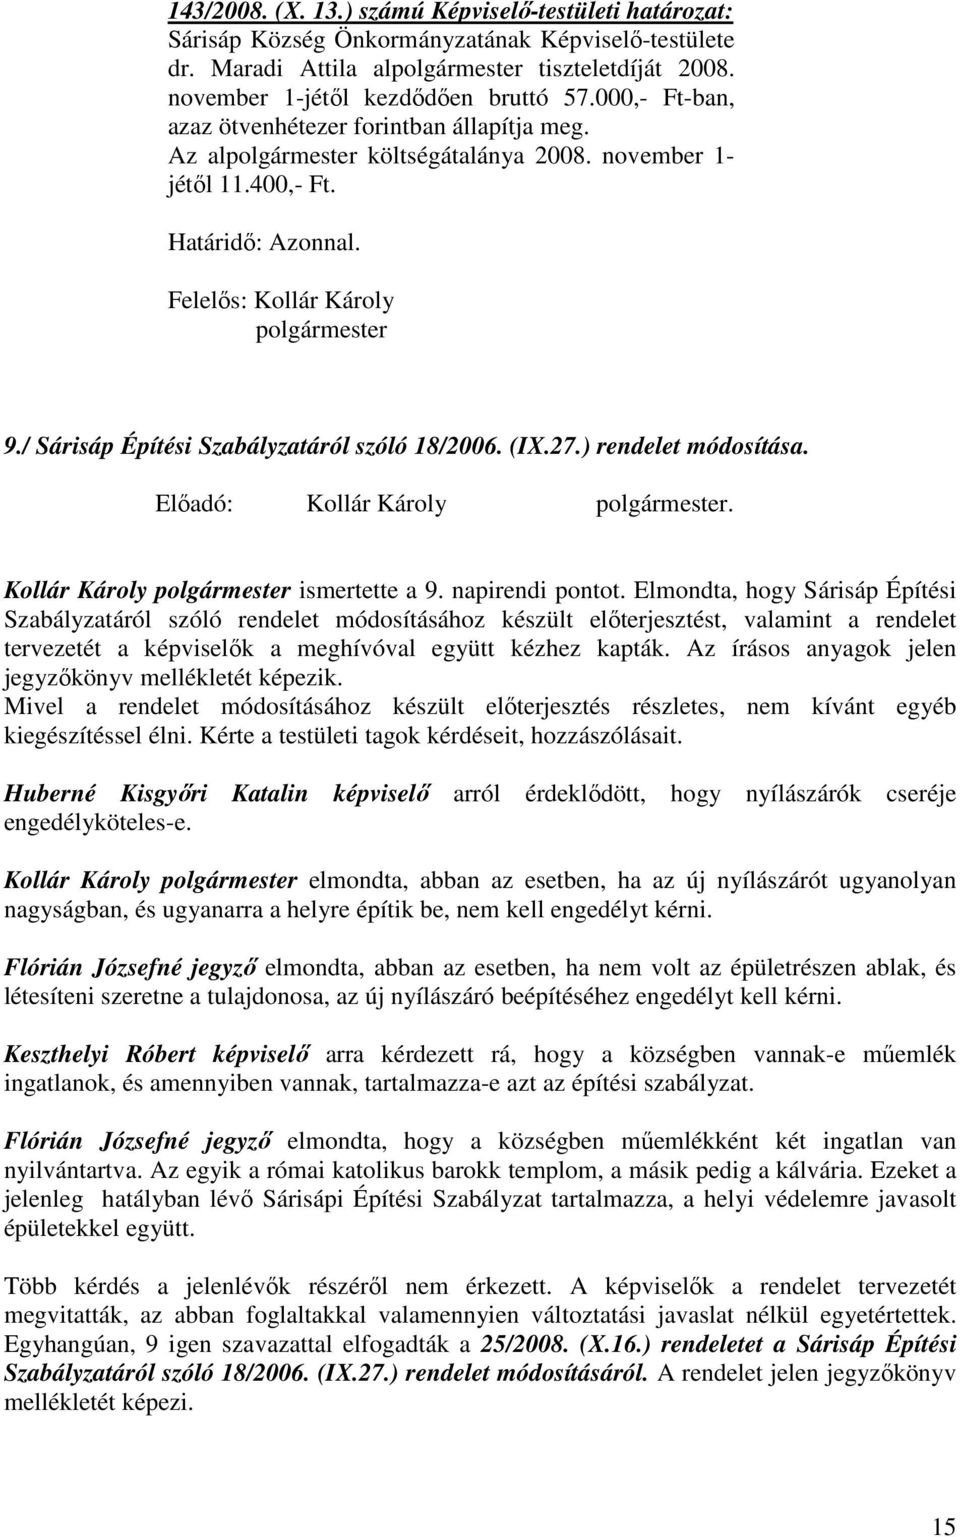 / Sárisáp Építési Szabályzatáról szóló 18/2006. (IX.27.) rendelet módosítása. Elıadó: Kollár Károly polgármester. Kollár Károly polgármester ismertette a 9. napirendi pontot.